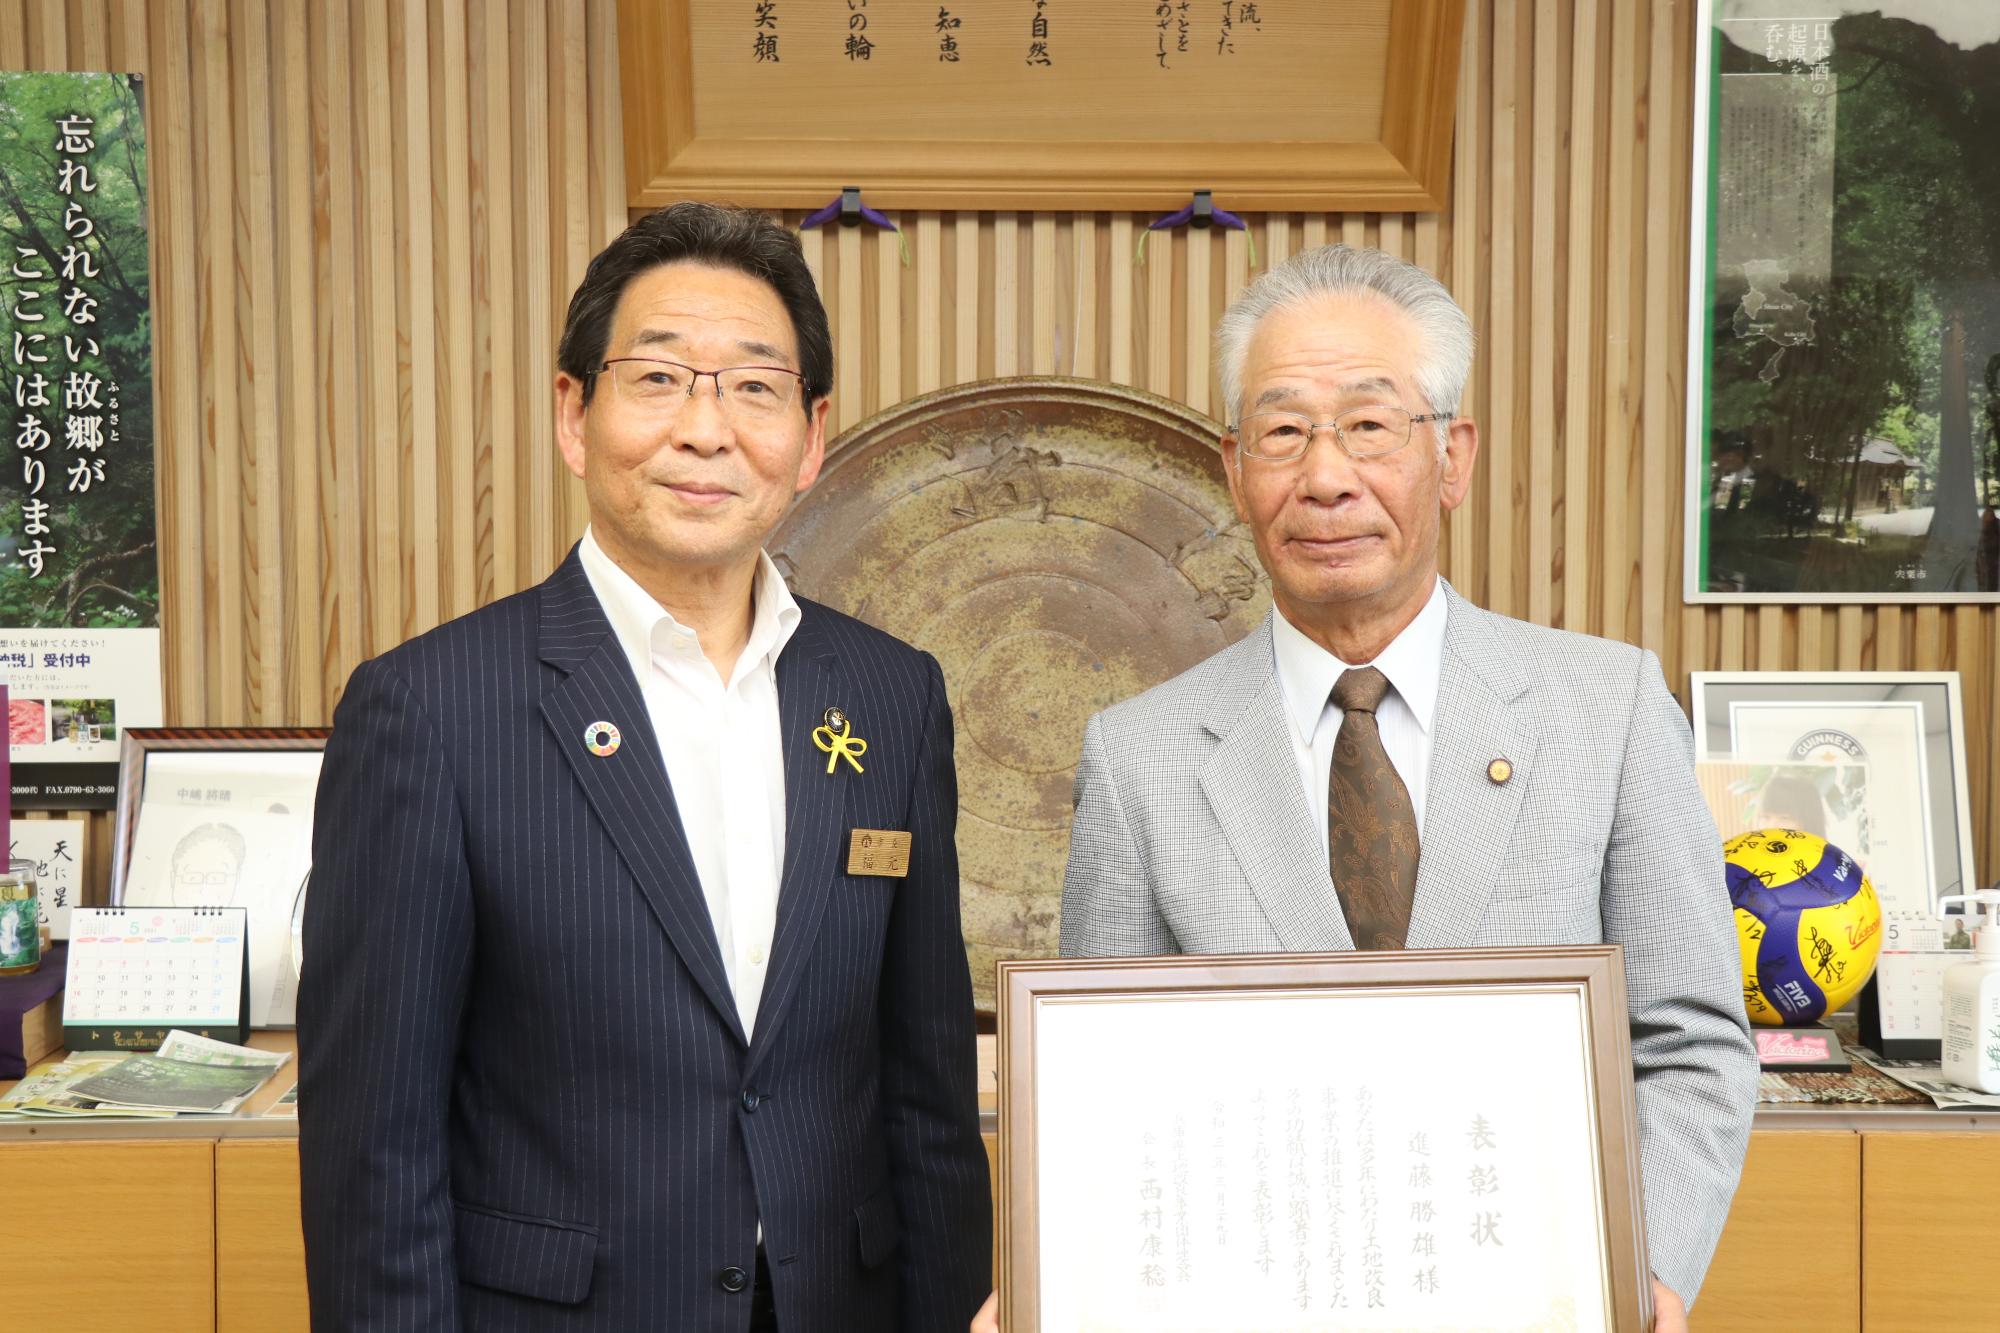 土地改良事業功労者表彰受賞報告、左に福元市長、右に表彰状を手にした進藤さんが並んでいる写真